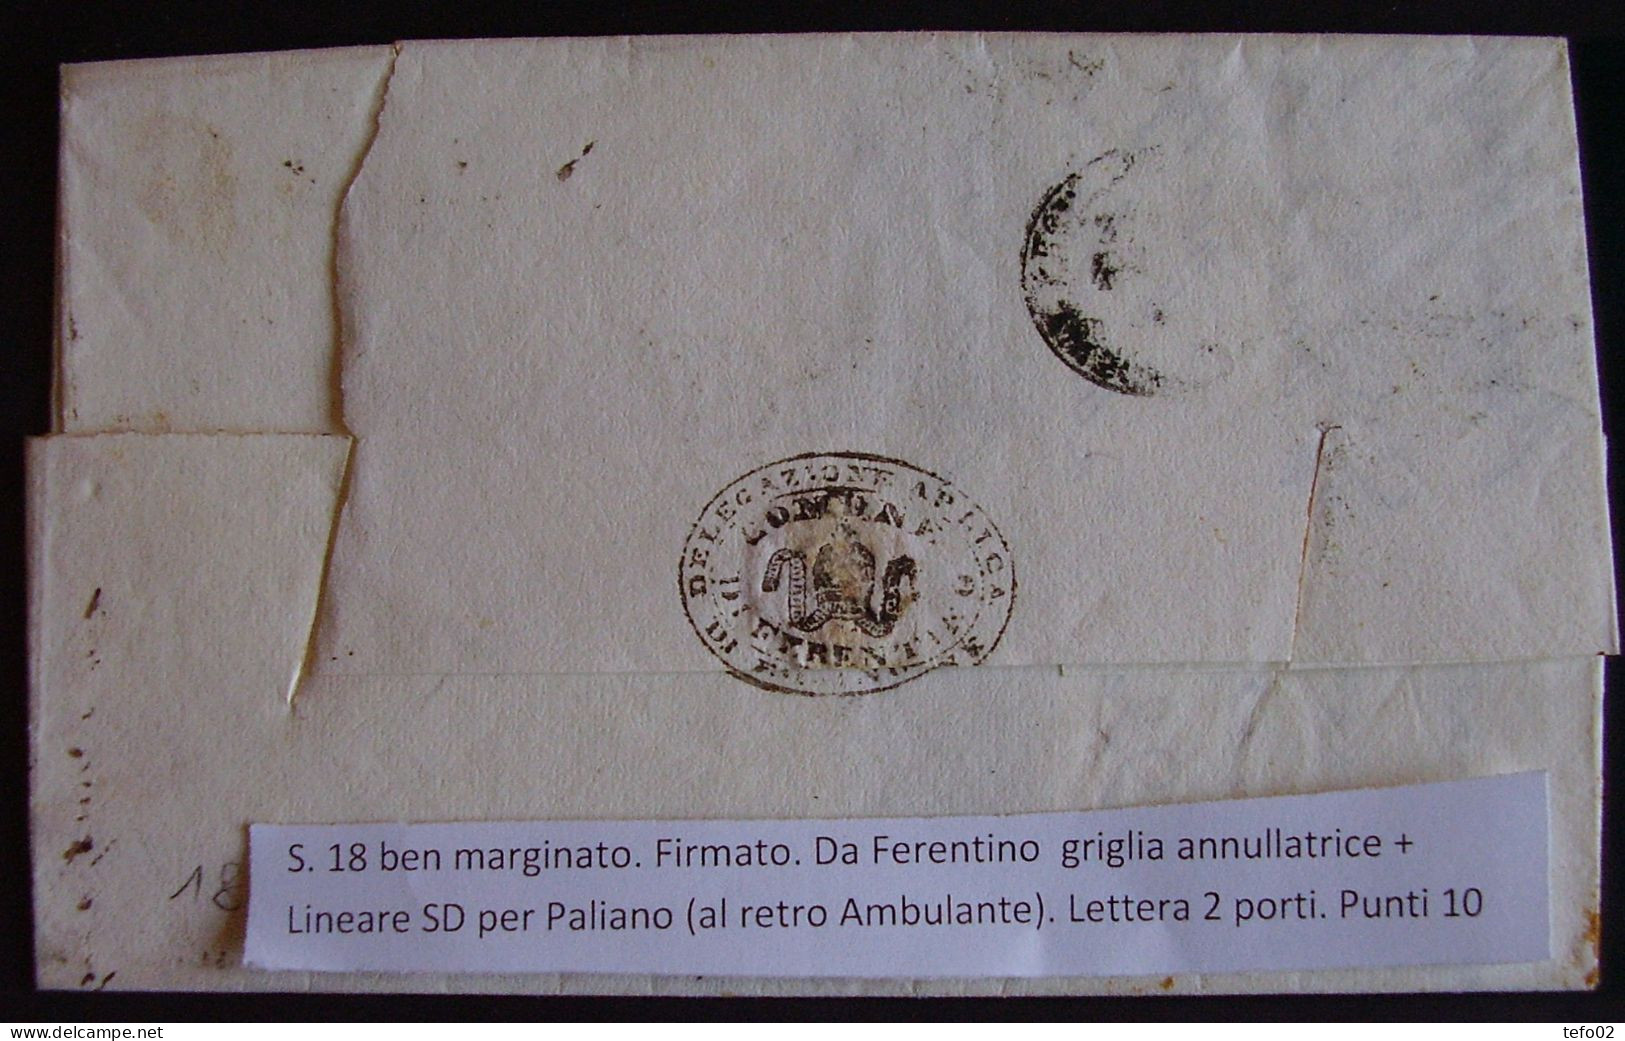 Pontificio. Storia postale. La Direzione postale di Frosinone